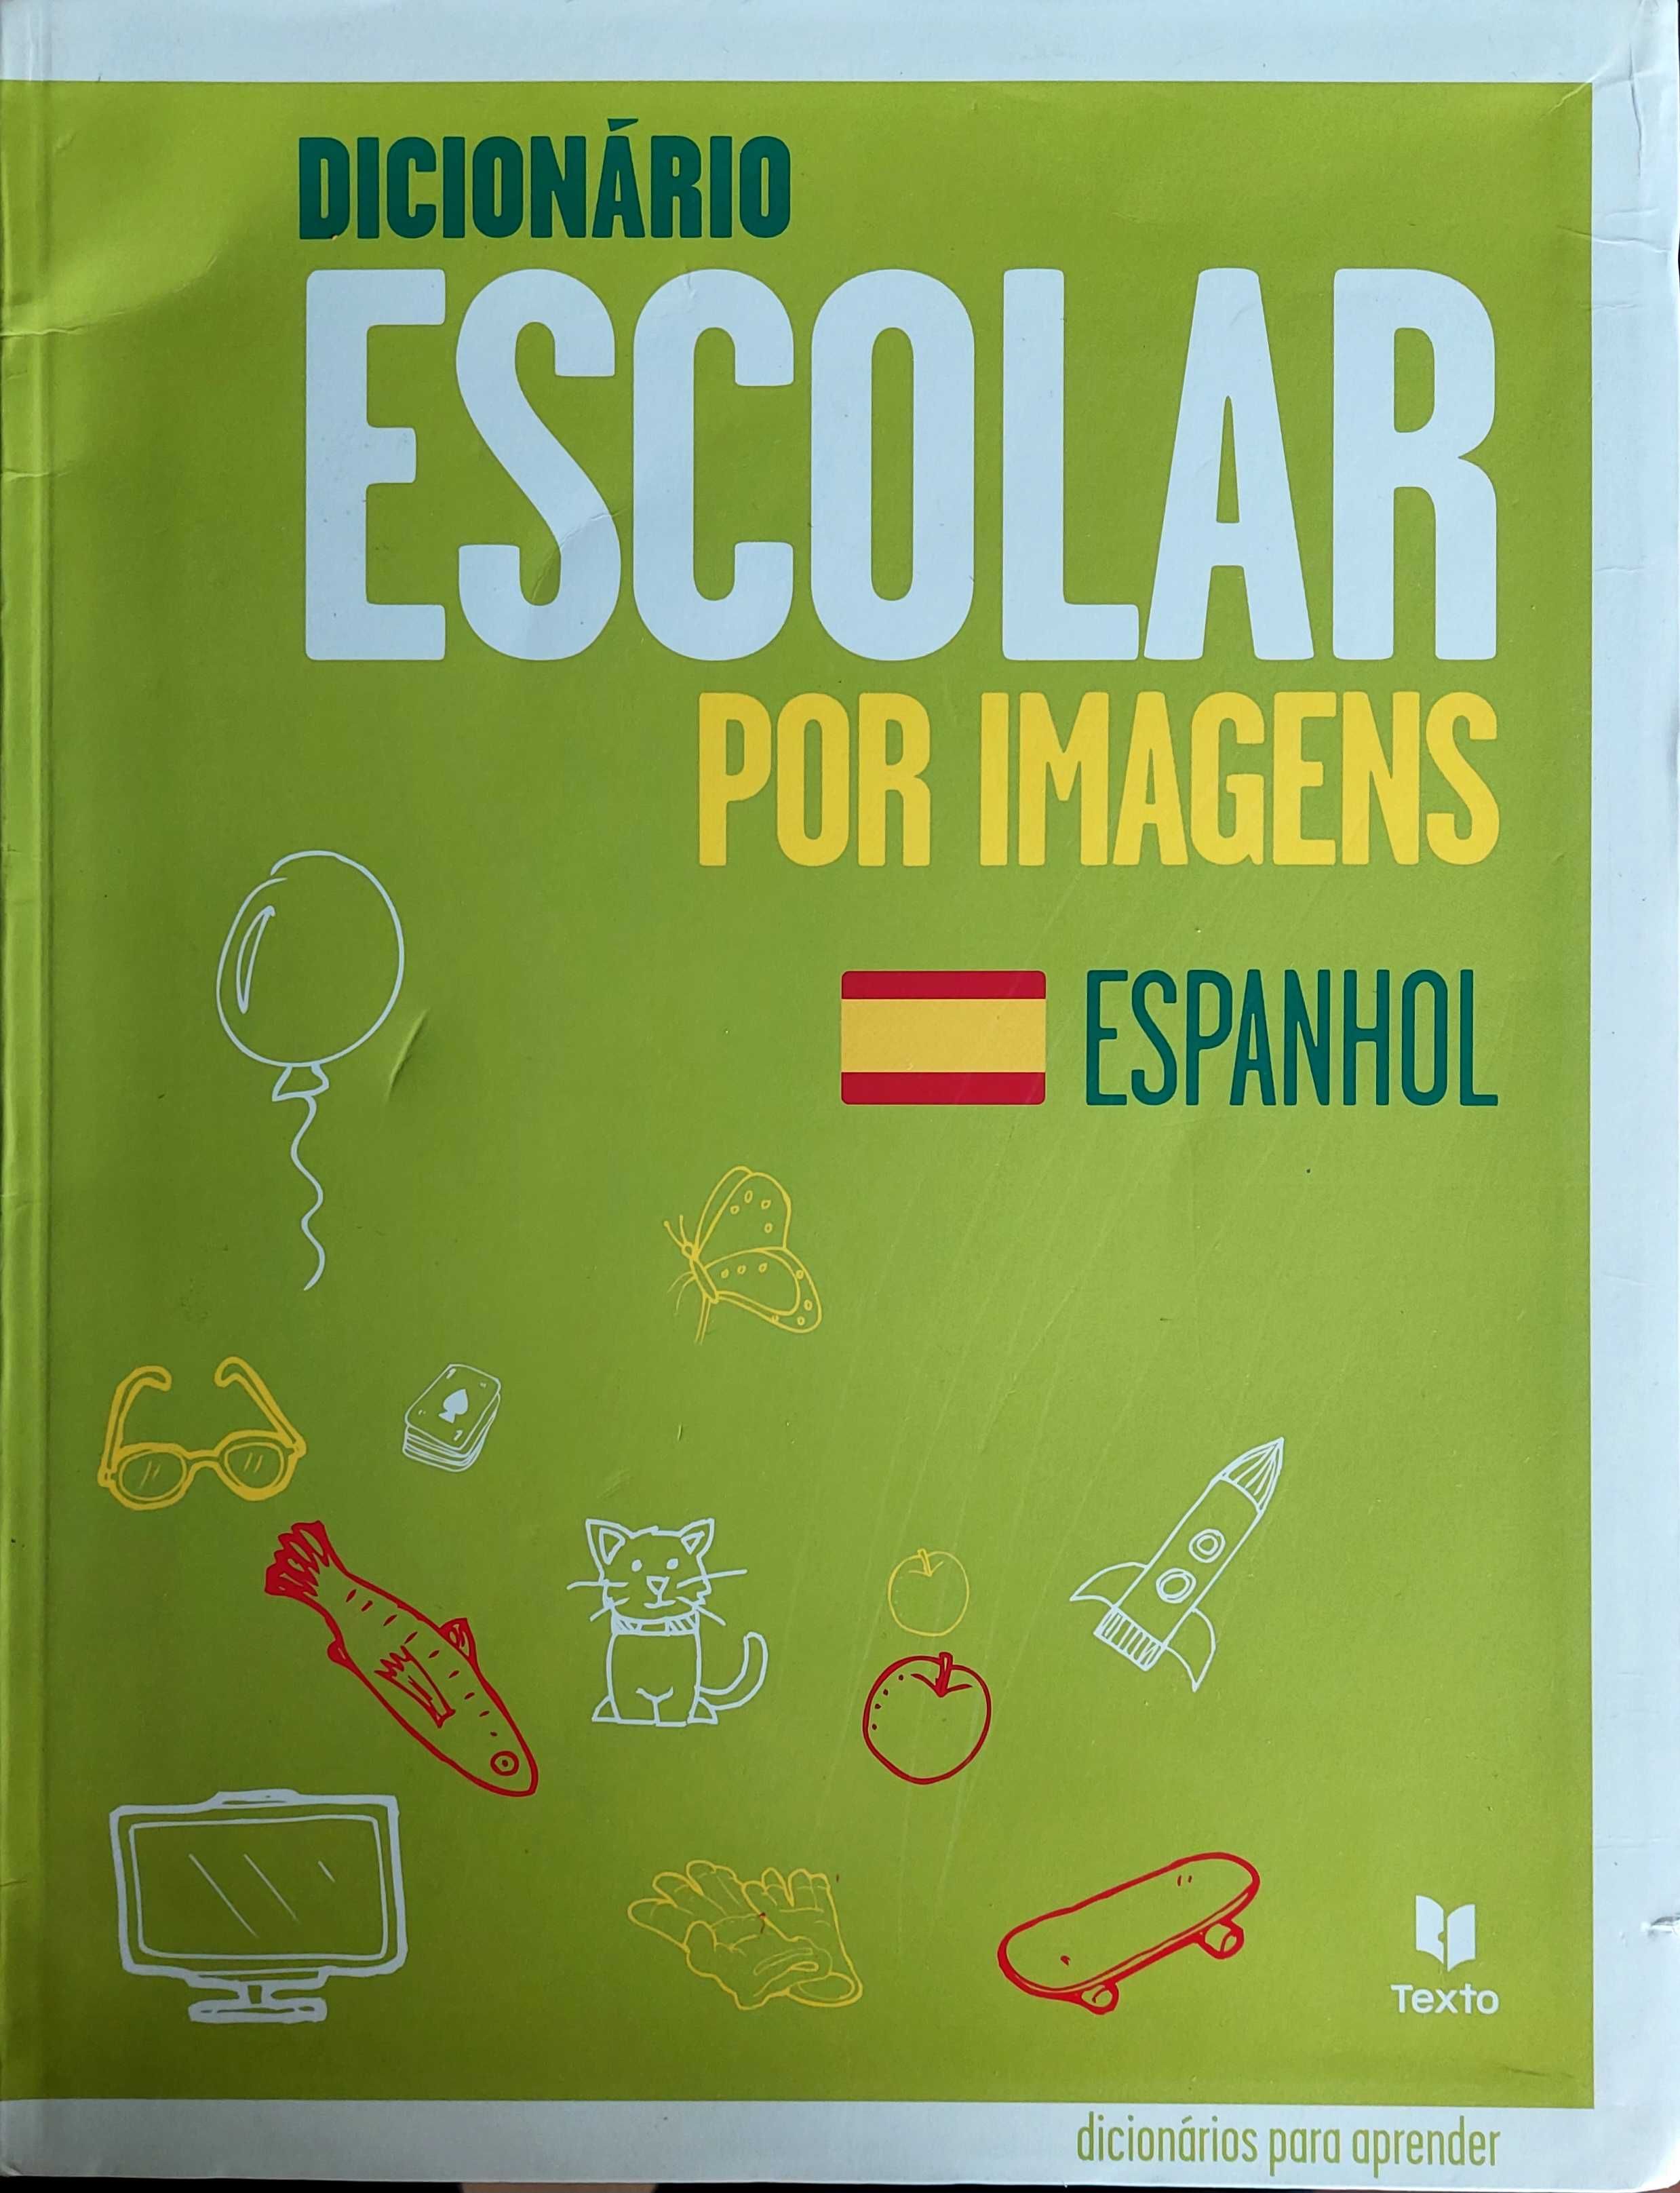 Dicionário Escolar por Imagens - Espanhol